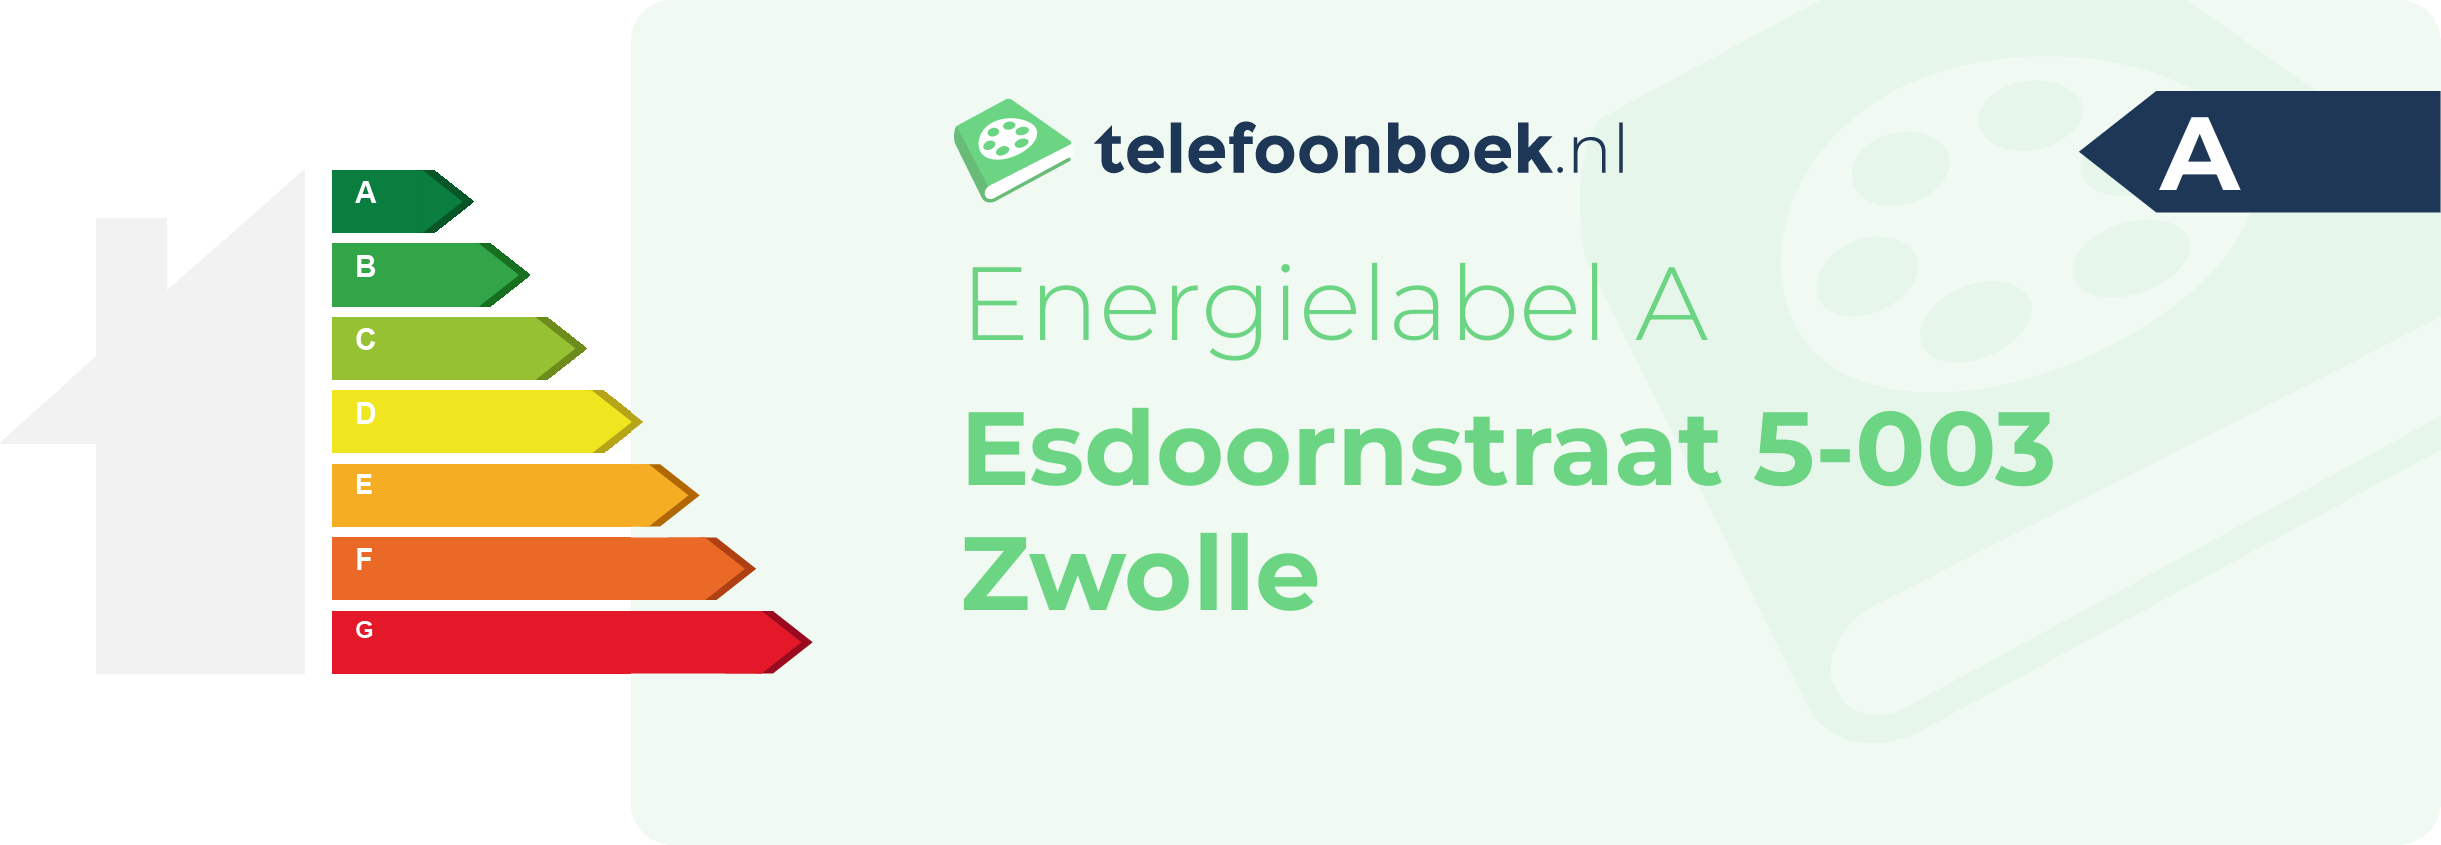 Energielabel Esdoornstraat 5-003 Zwolle